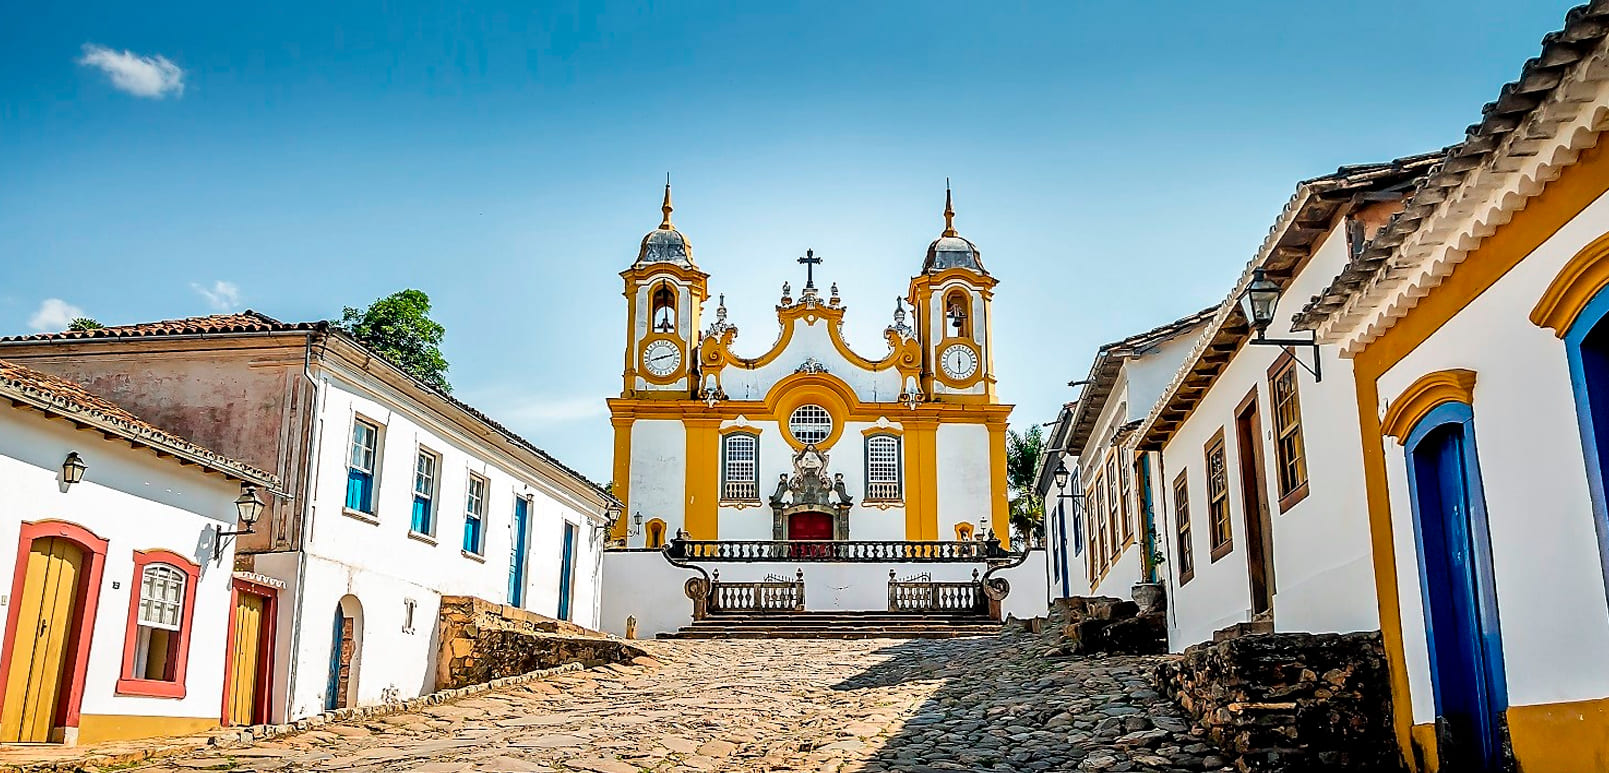 Lugares Bons Para Viajar Em Minas Gerais